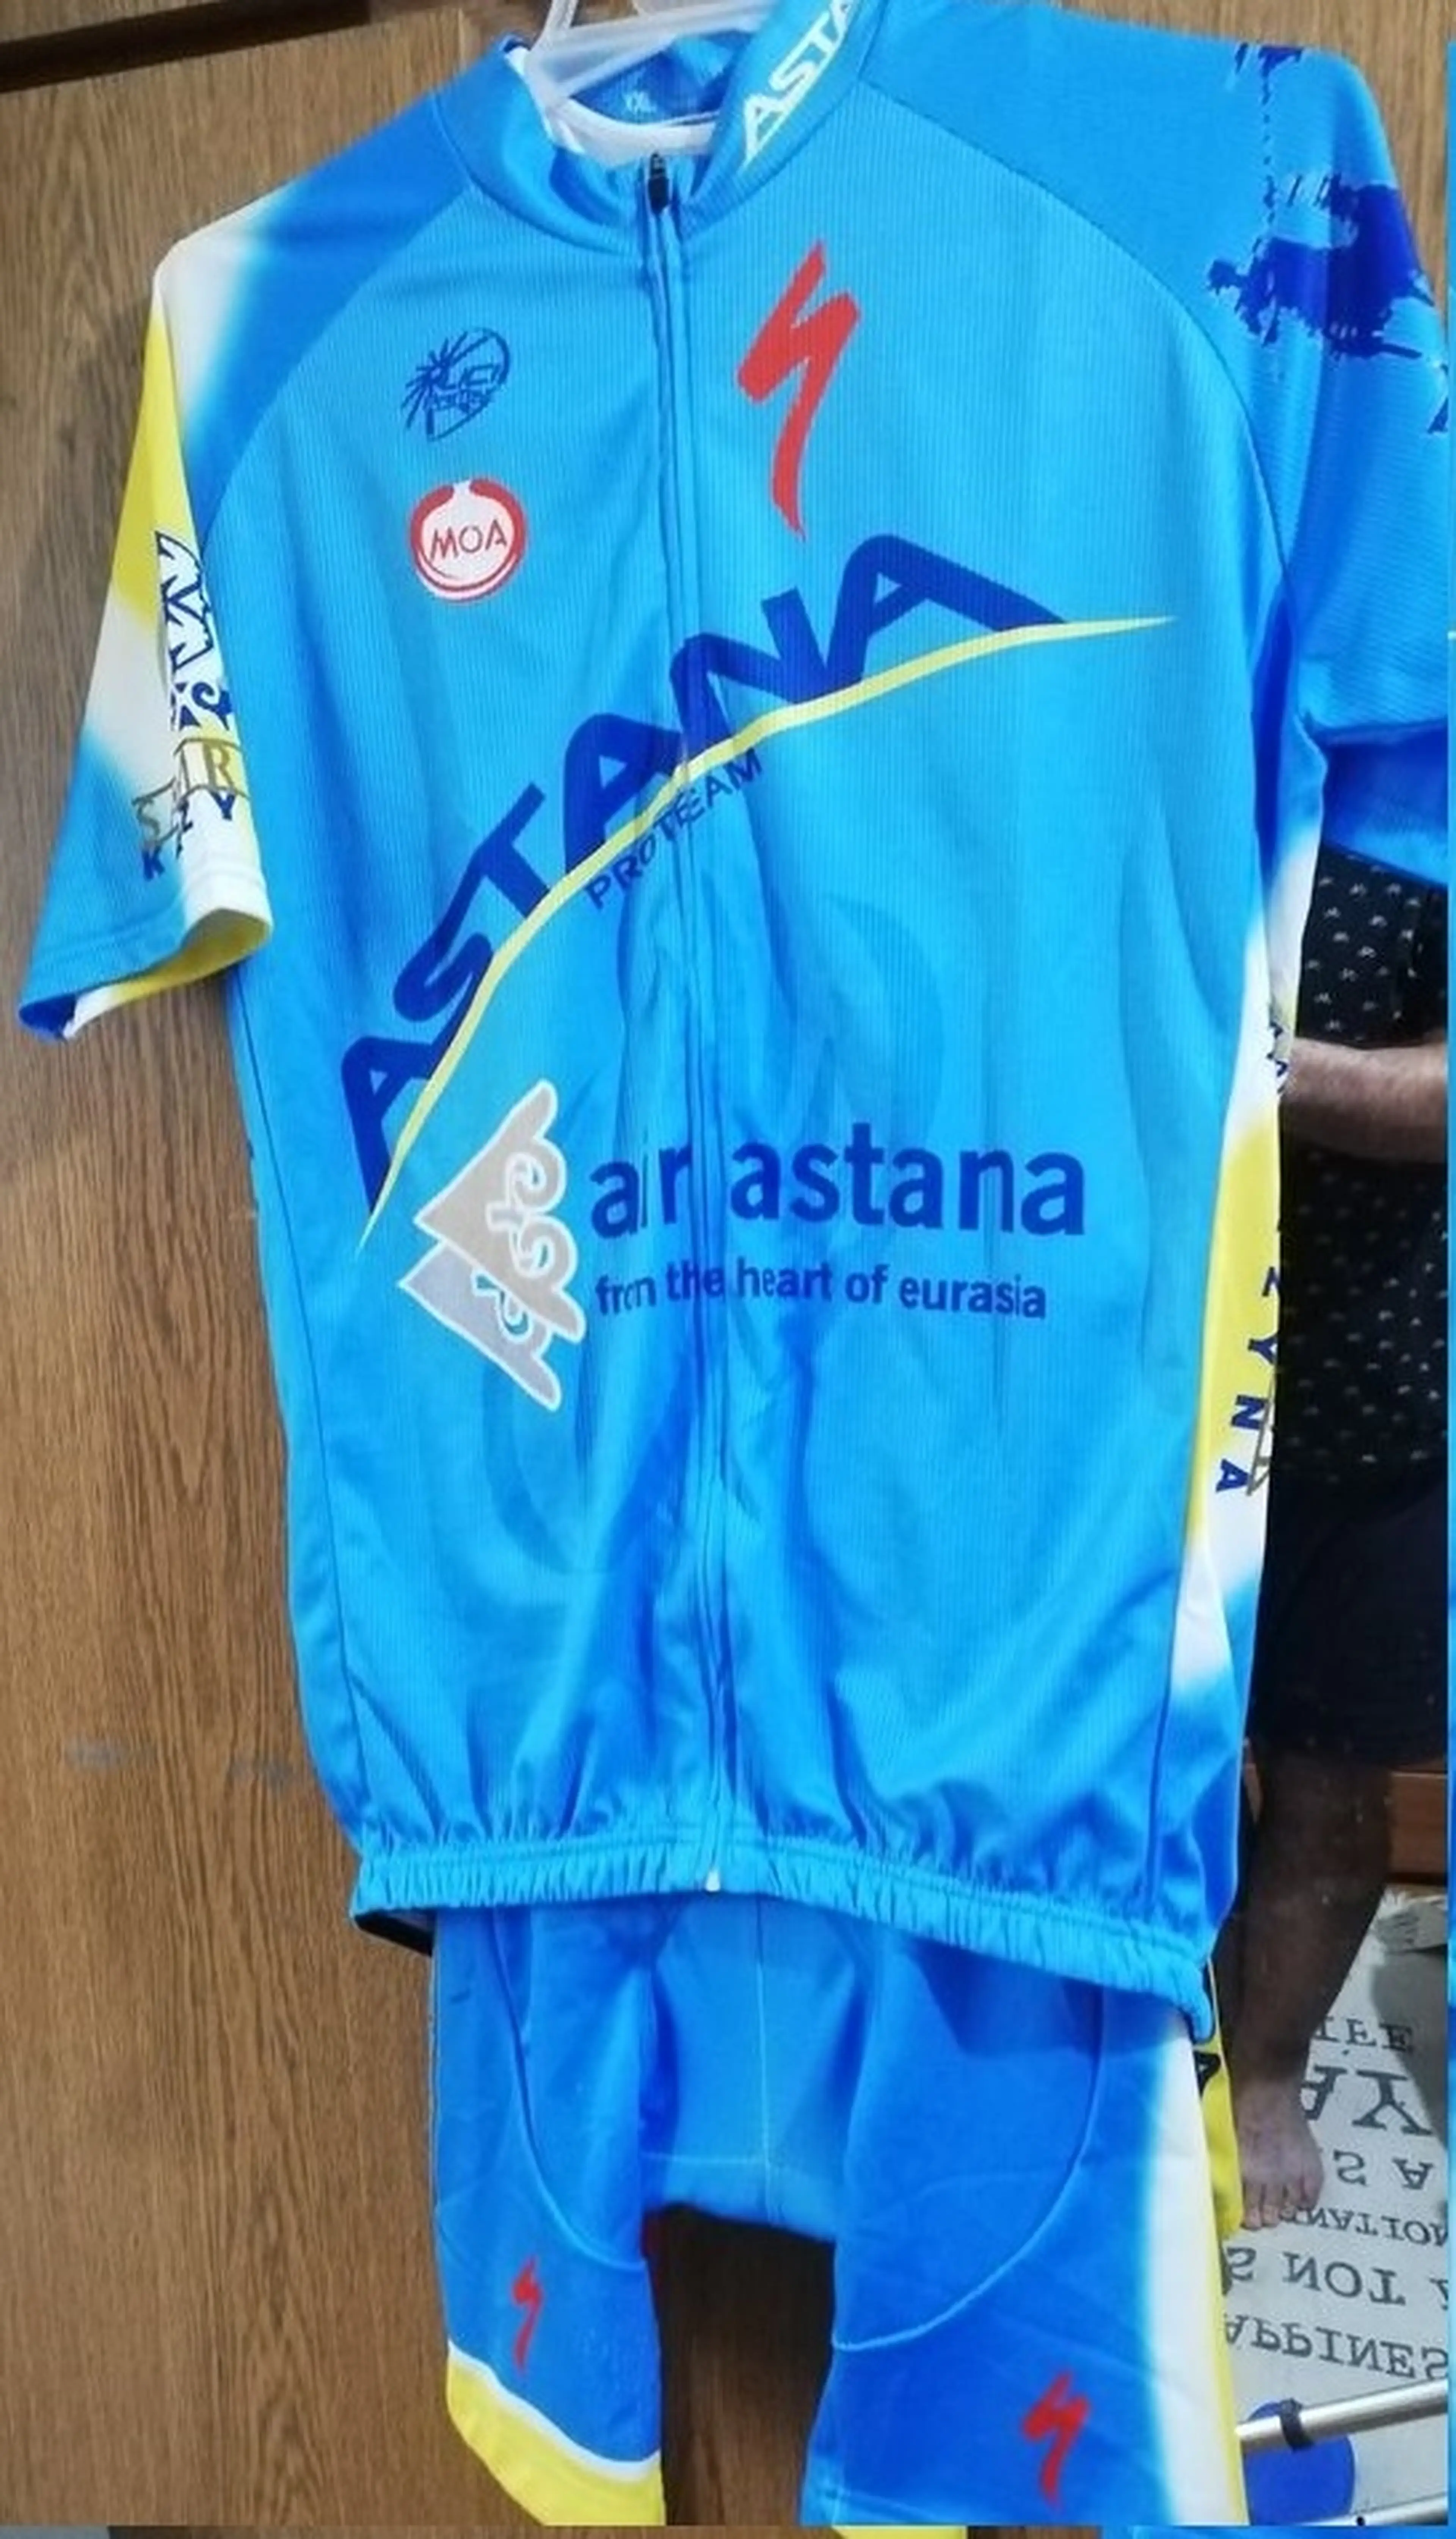 1. Vand echipament team Astana